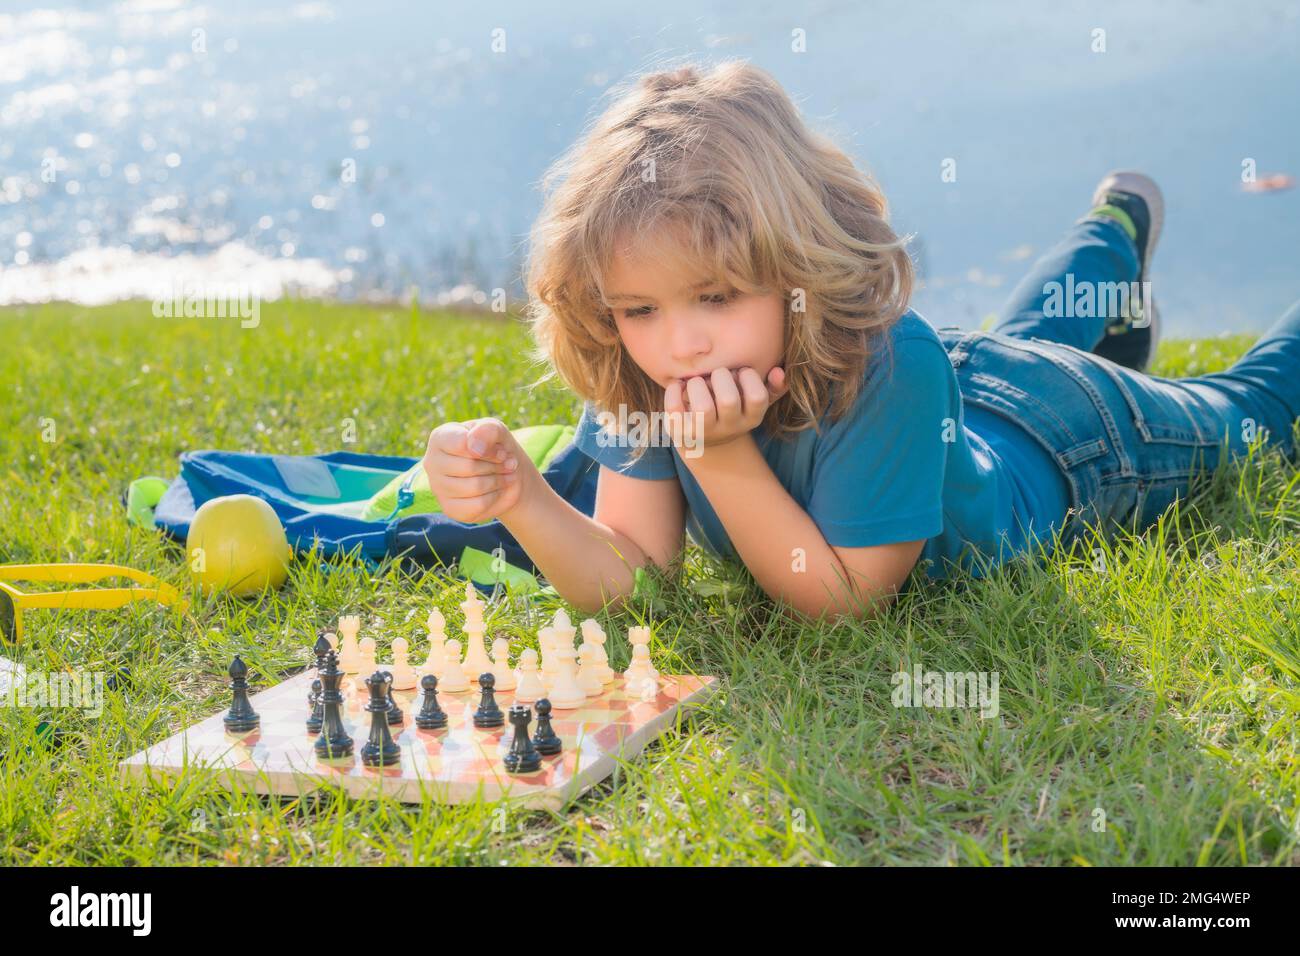 Konzentrierter Junge, der Schachstrategie entwickelt, Brettspiele im Garten spielt, auf Gras liegt. Stockfoto